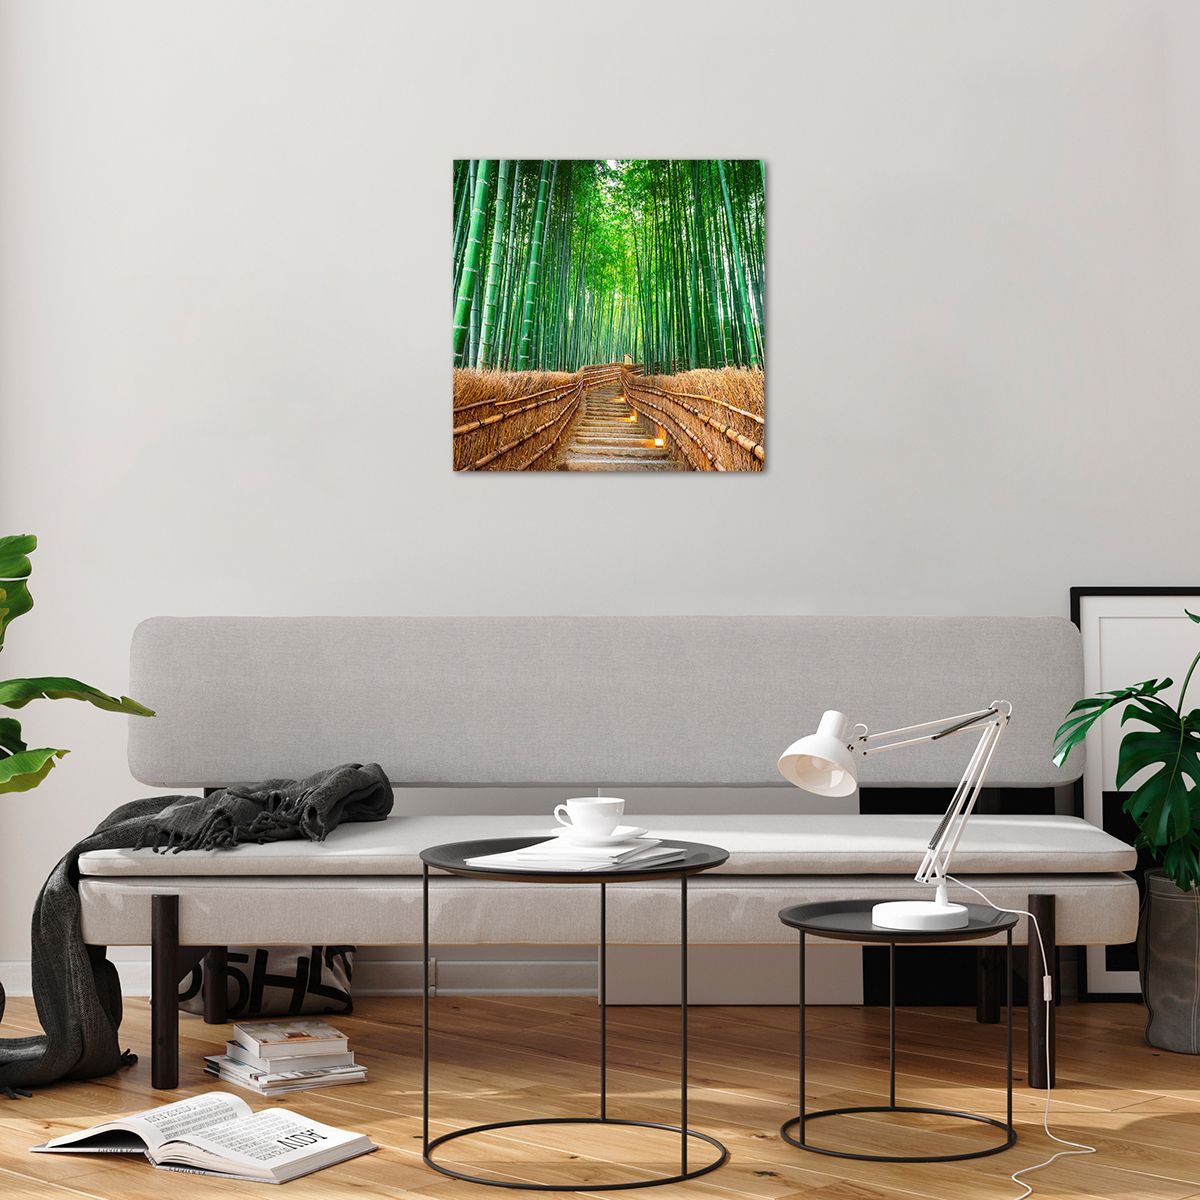 Bilder auf glas Bambus, Bilder auf glas Bambuswald, Bilder auf glas Natur, Bilder auf glas Landschaft, Bilder auf glas Asien